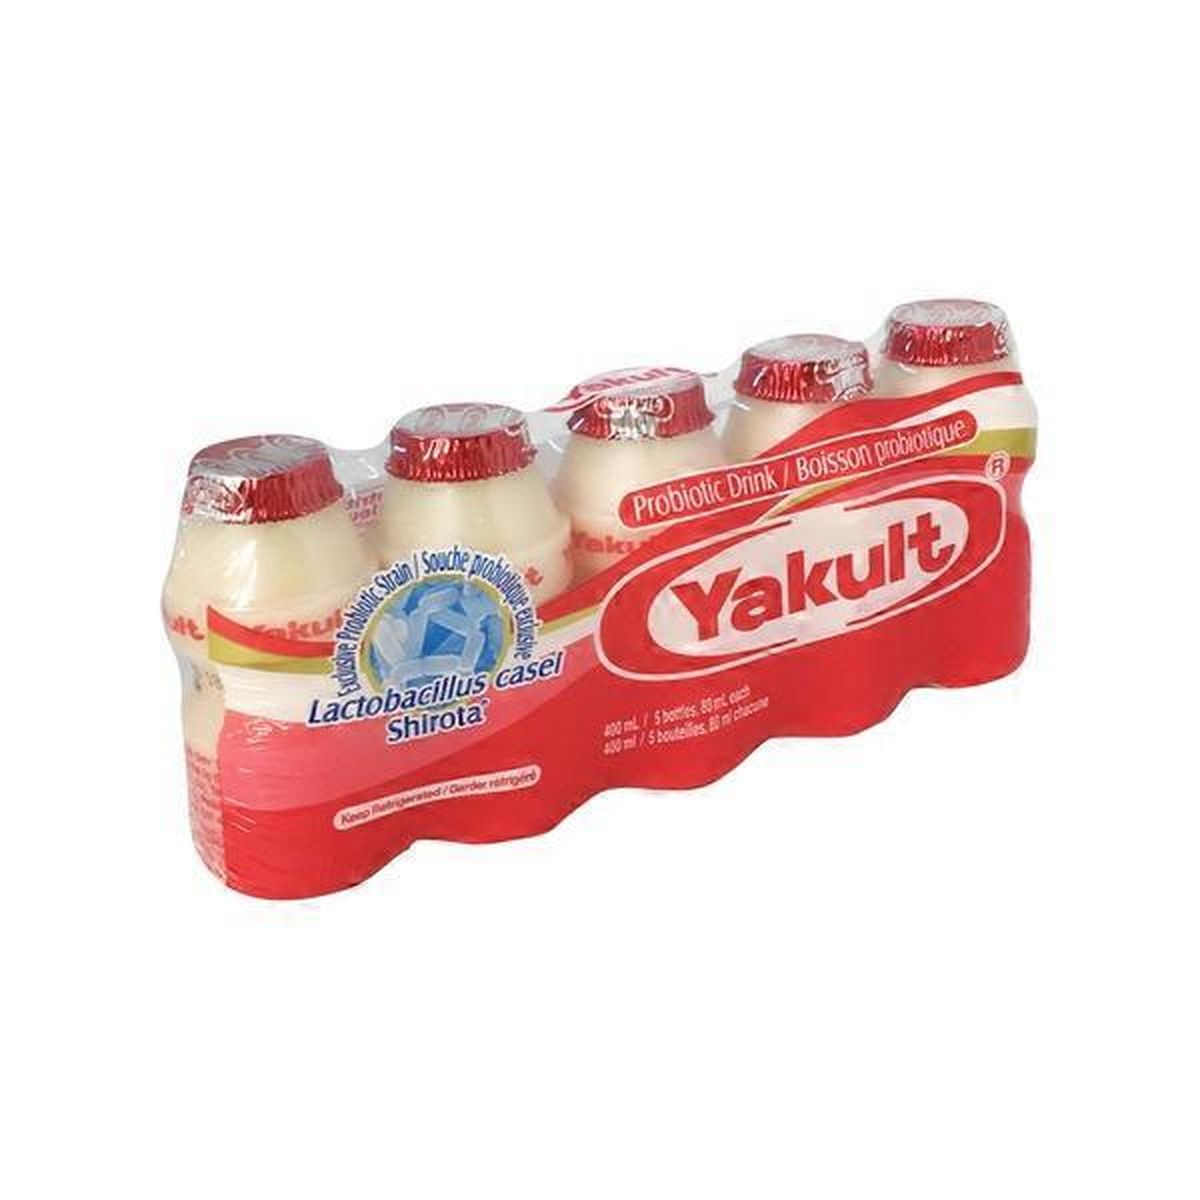 Yakult Probiotic Drink Original (2.7 fl oz) Delivery or Pickup Near Me ...